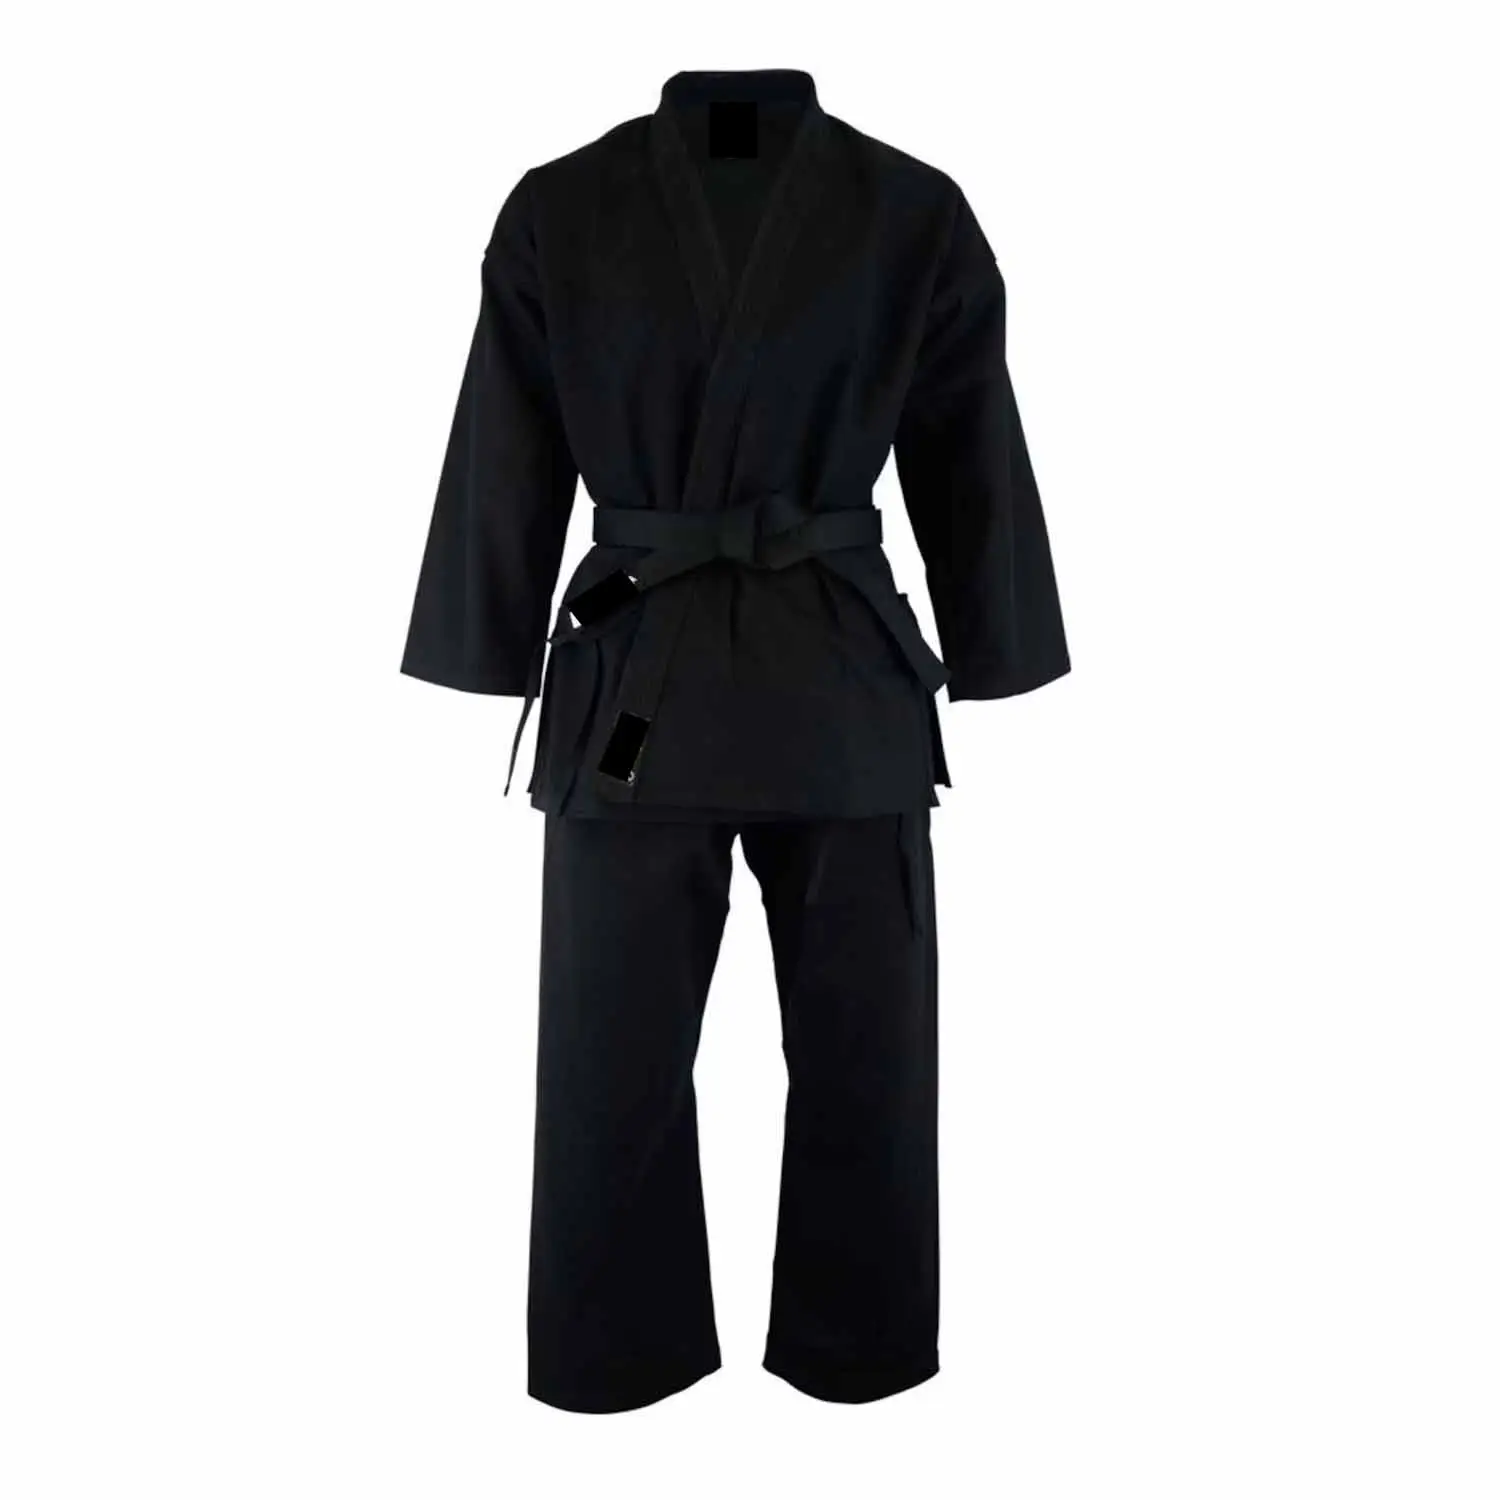 10oz a 12oz materiale traspirante Design unico arti Judo Karate uniforme con materiale di cotone